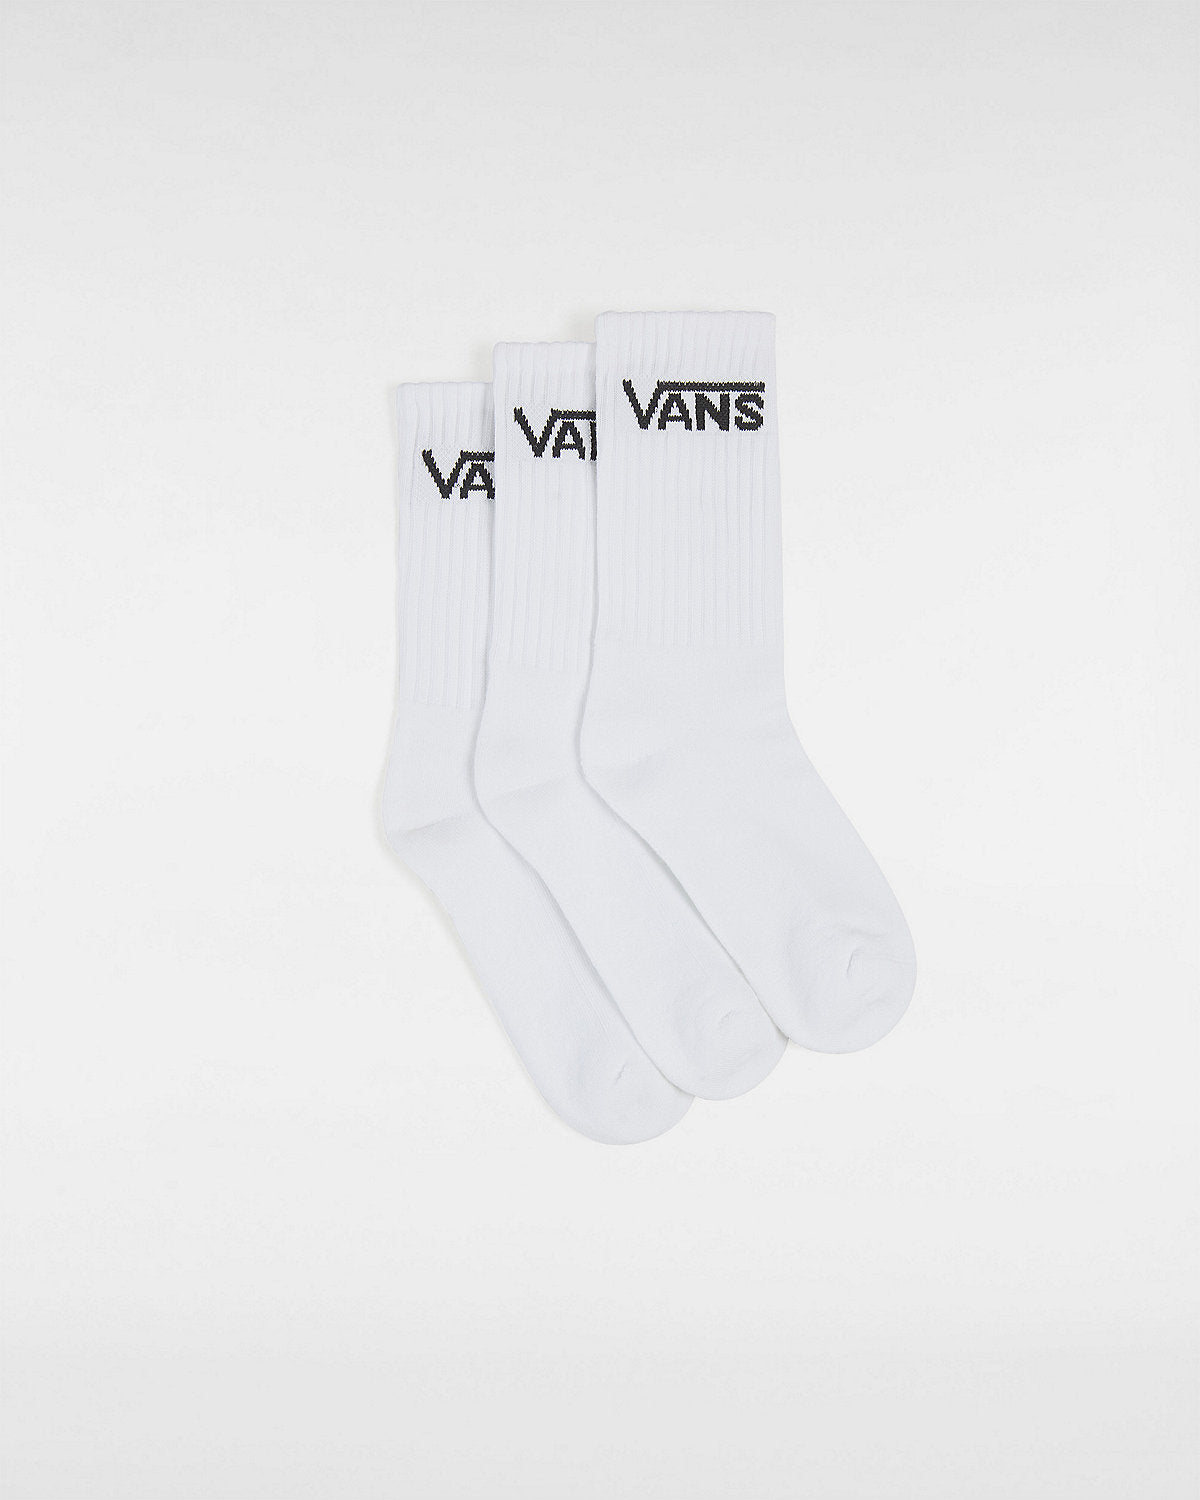 VANS Kids Classic Crew Socks (3 Pairs) - White